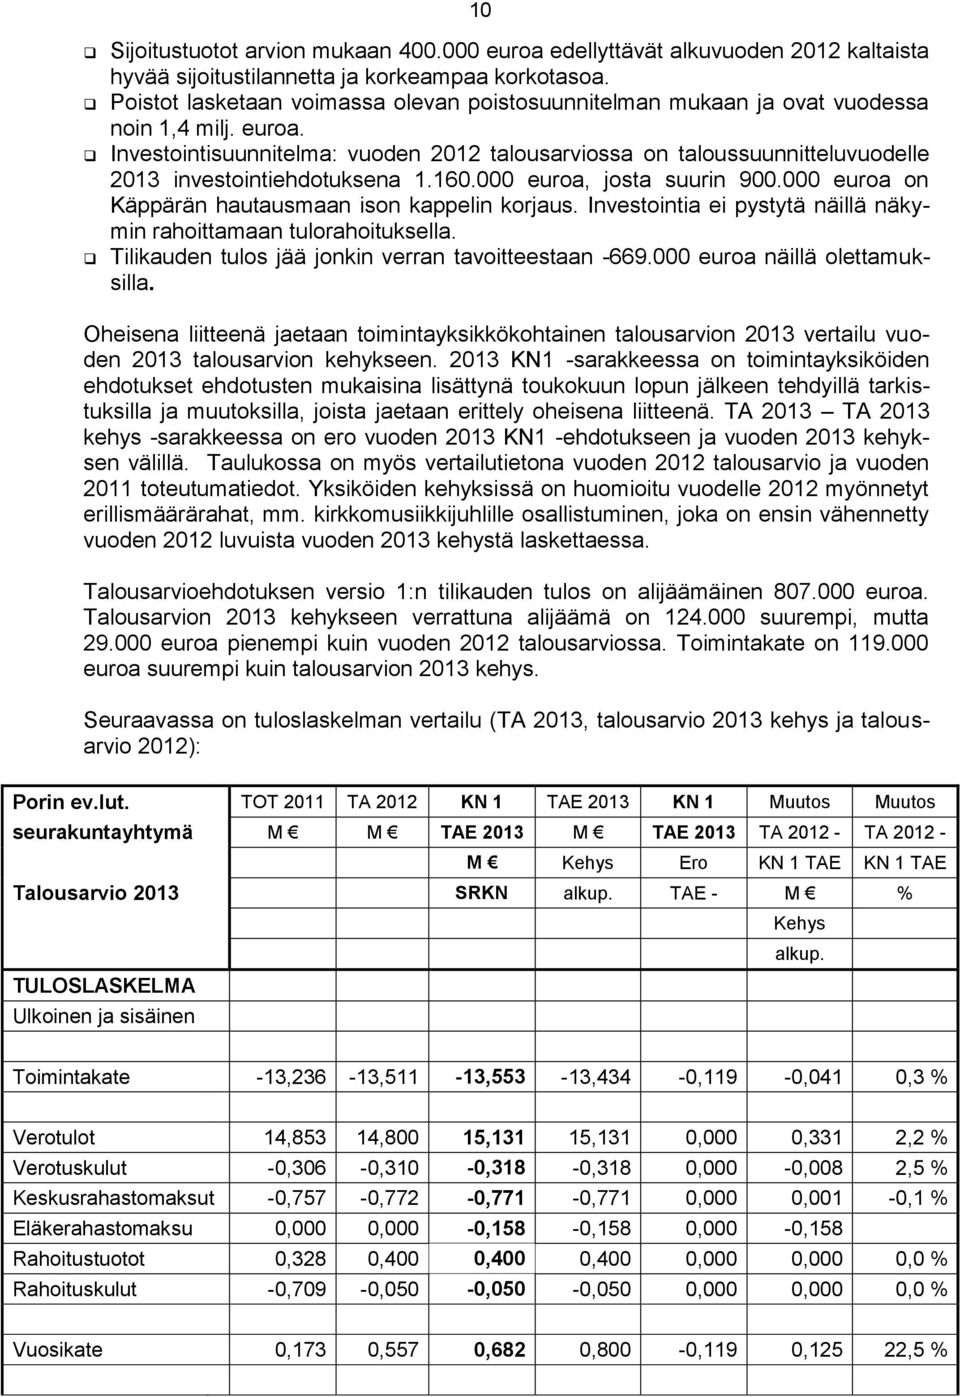 Investointisuunnitelma: vuoden 2012 talousarviossa on taloussuunnitteluvuodelle 2013 investointiehdotuksena 1.160.000 euroa, josta suurin 900.000 euroa on Käppärän hautausmaan ison kappelin korjaus.